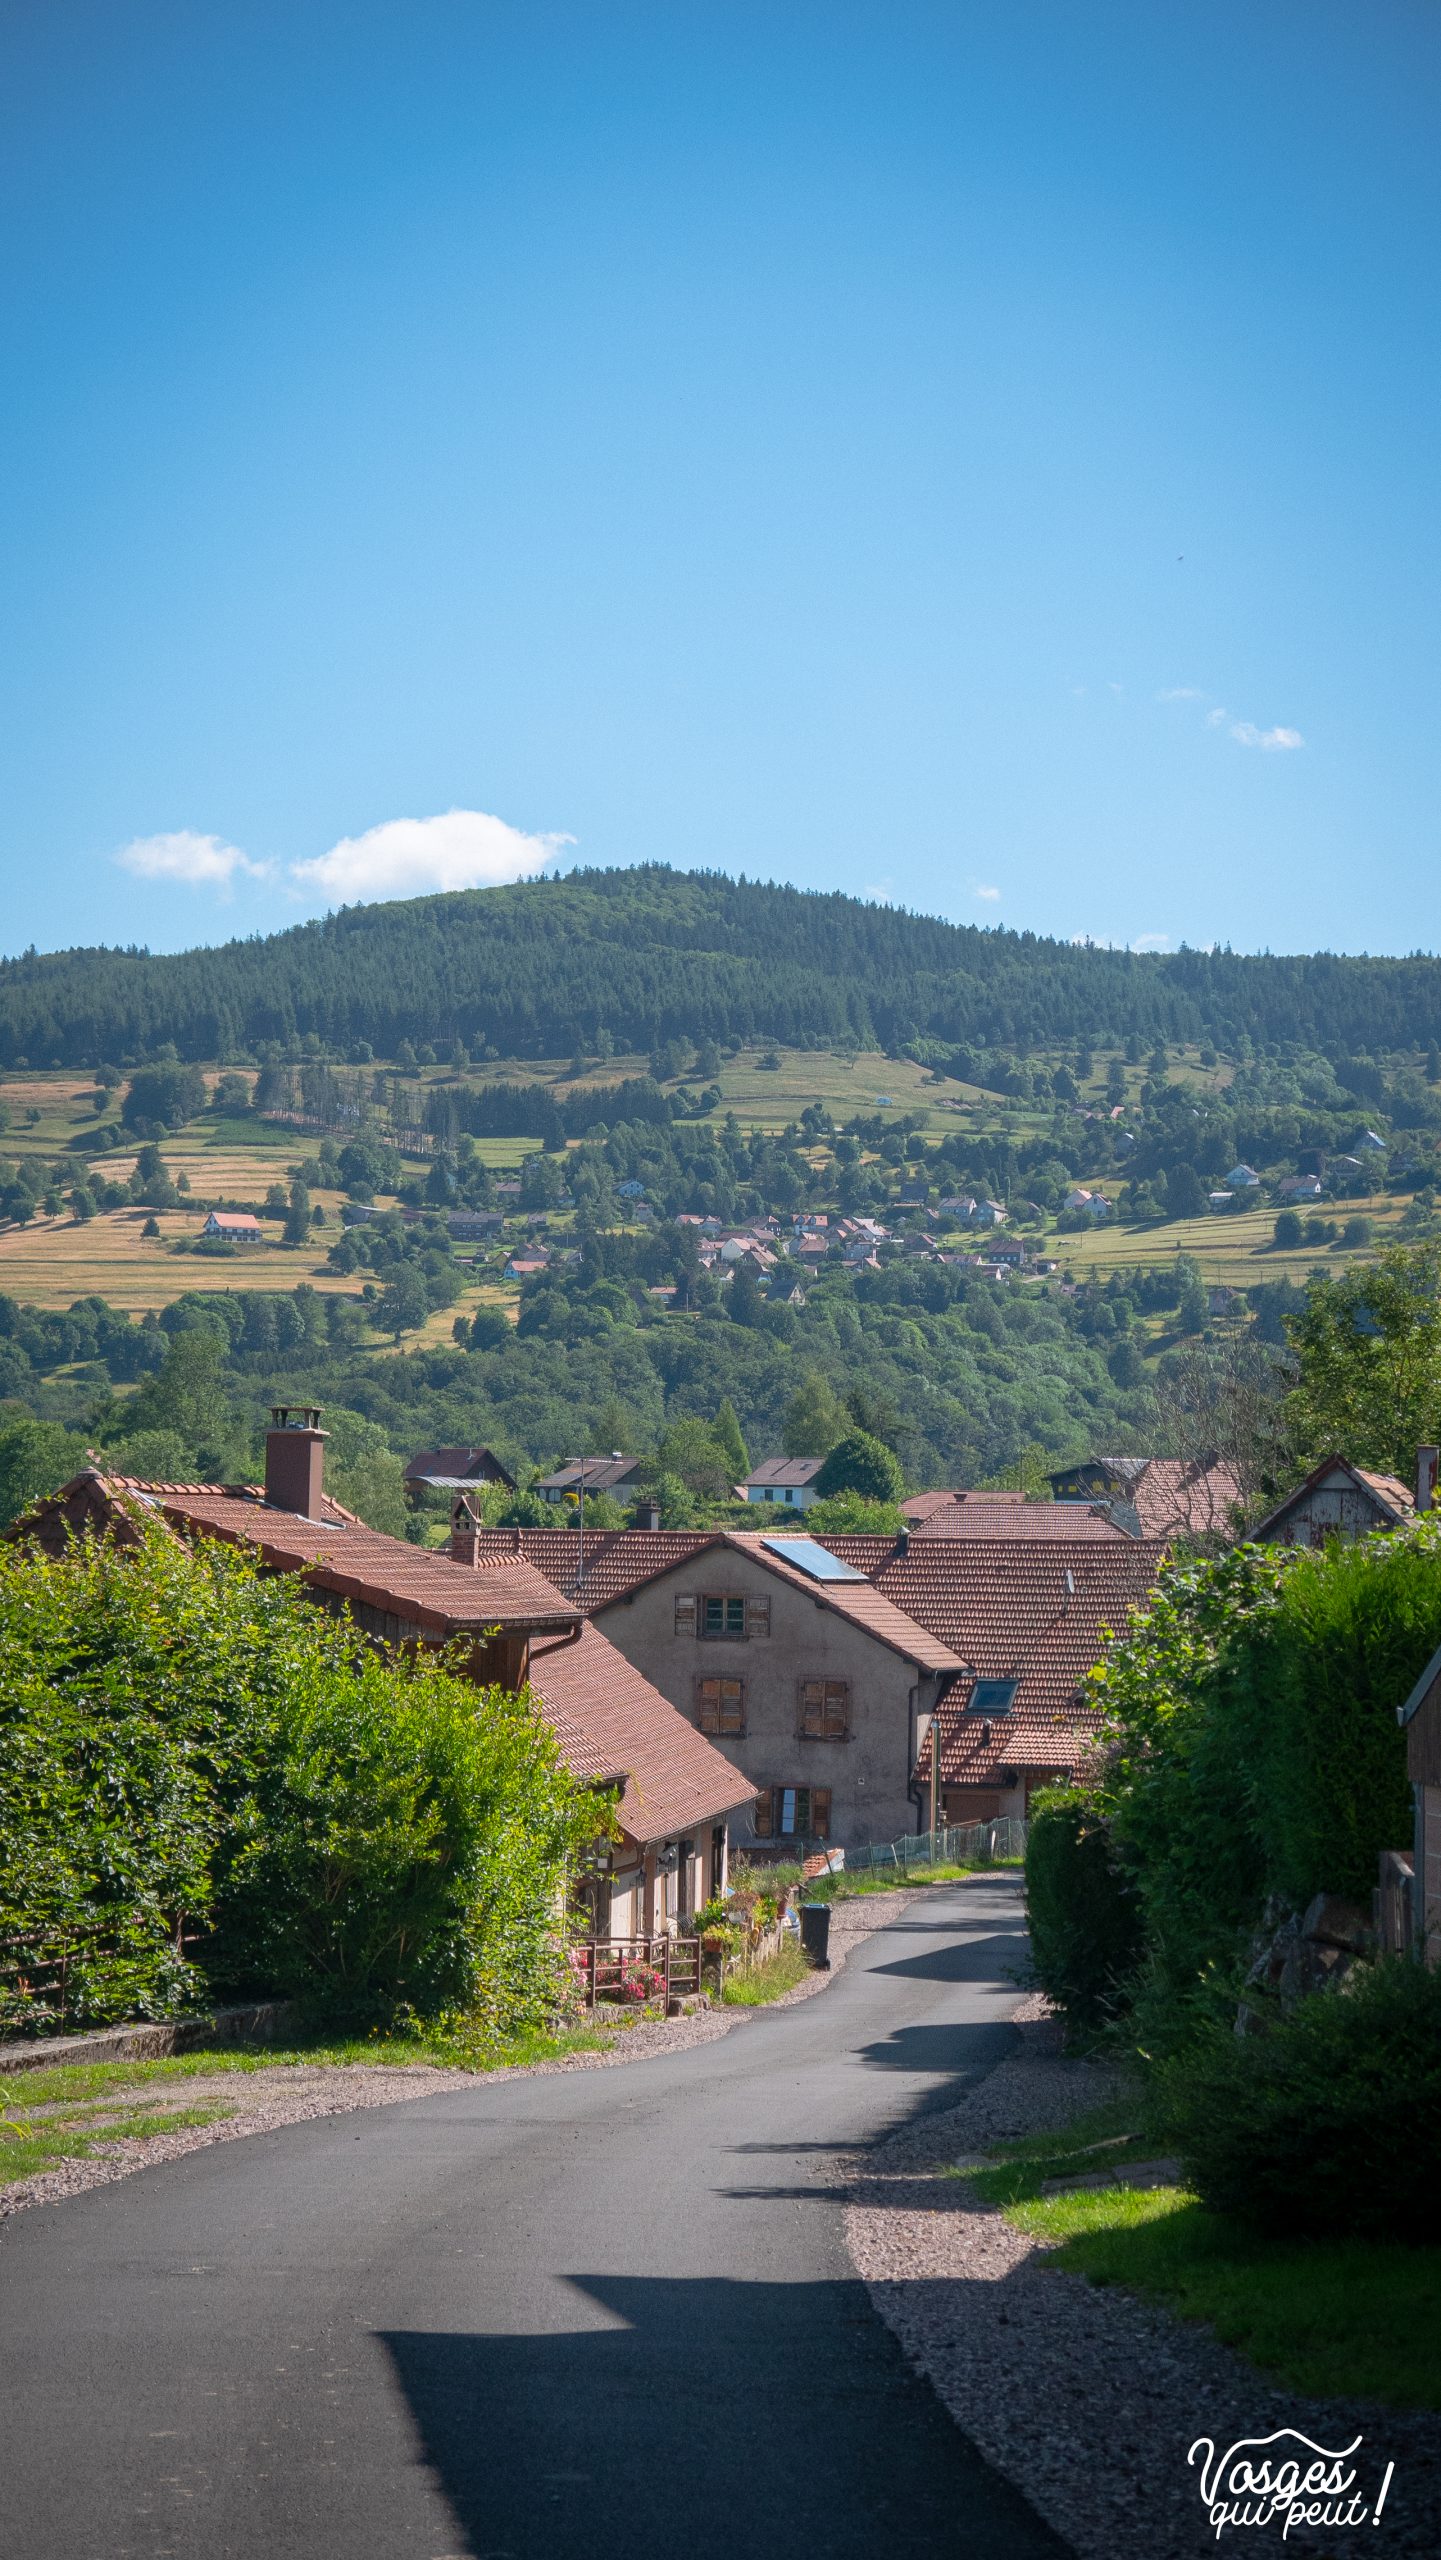 Le village de Bellefosse dans le Massif des Vosges